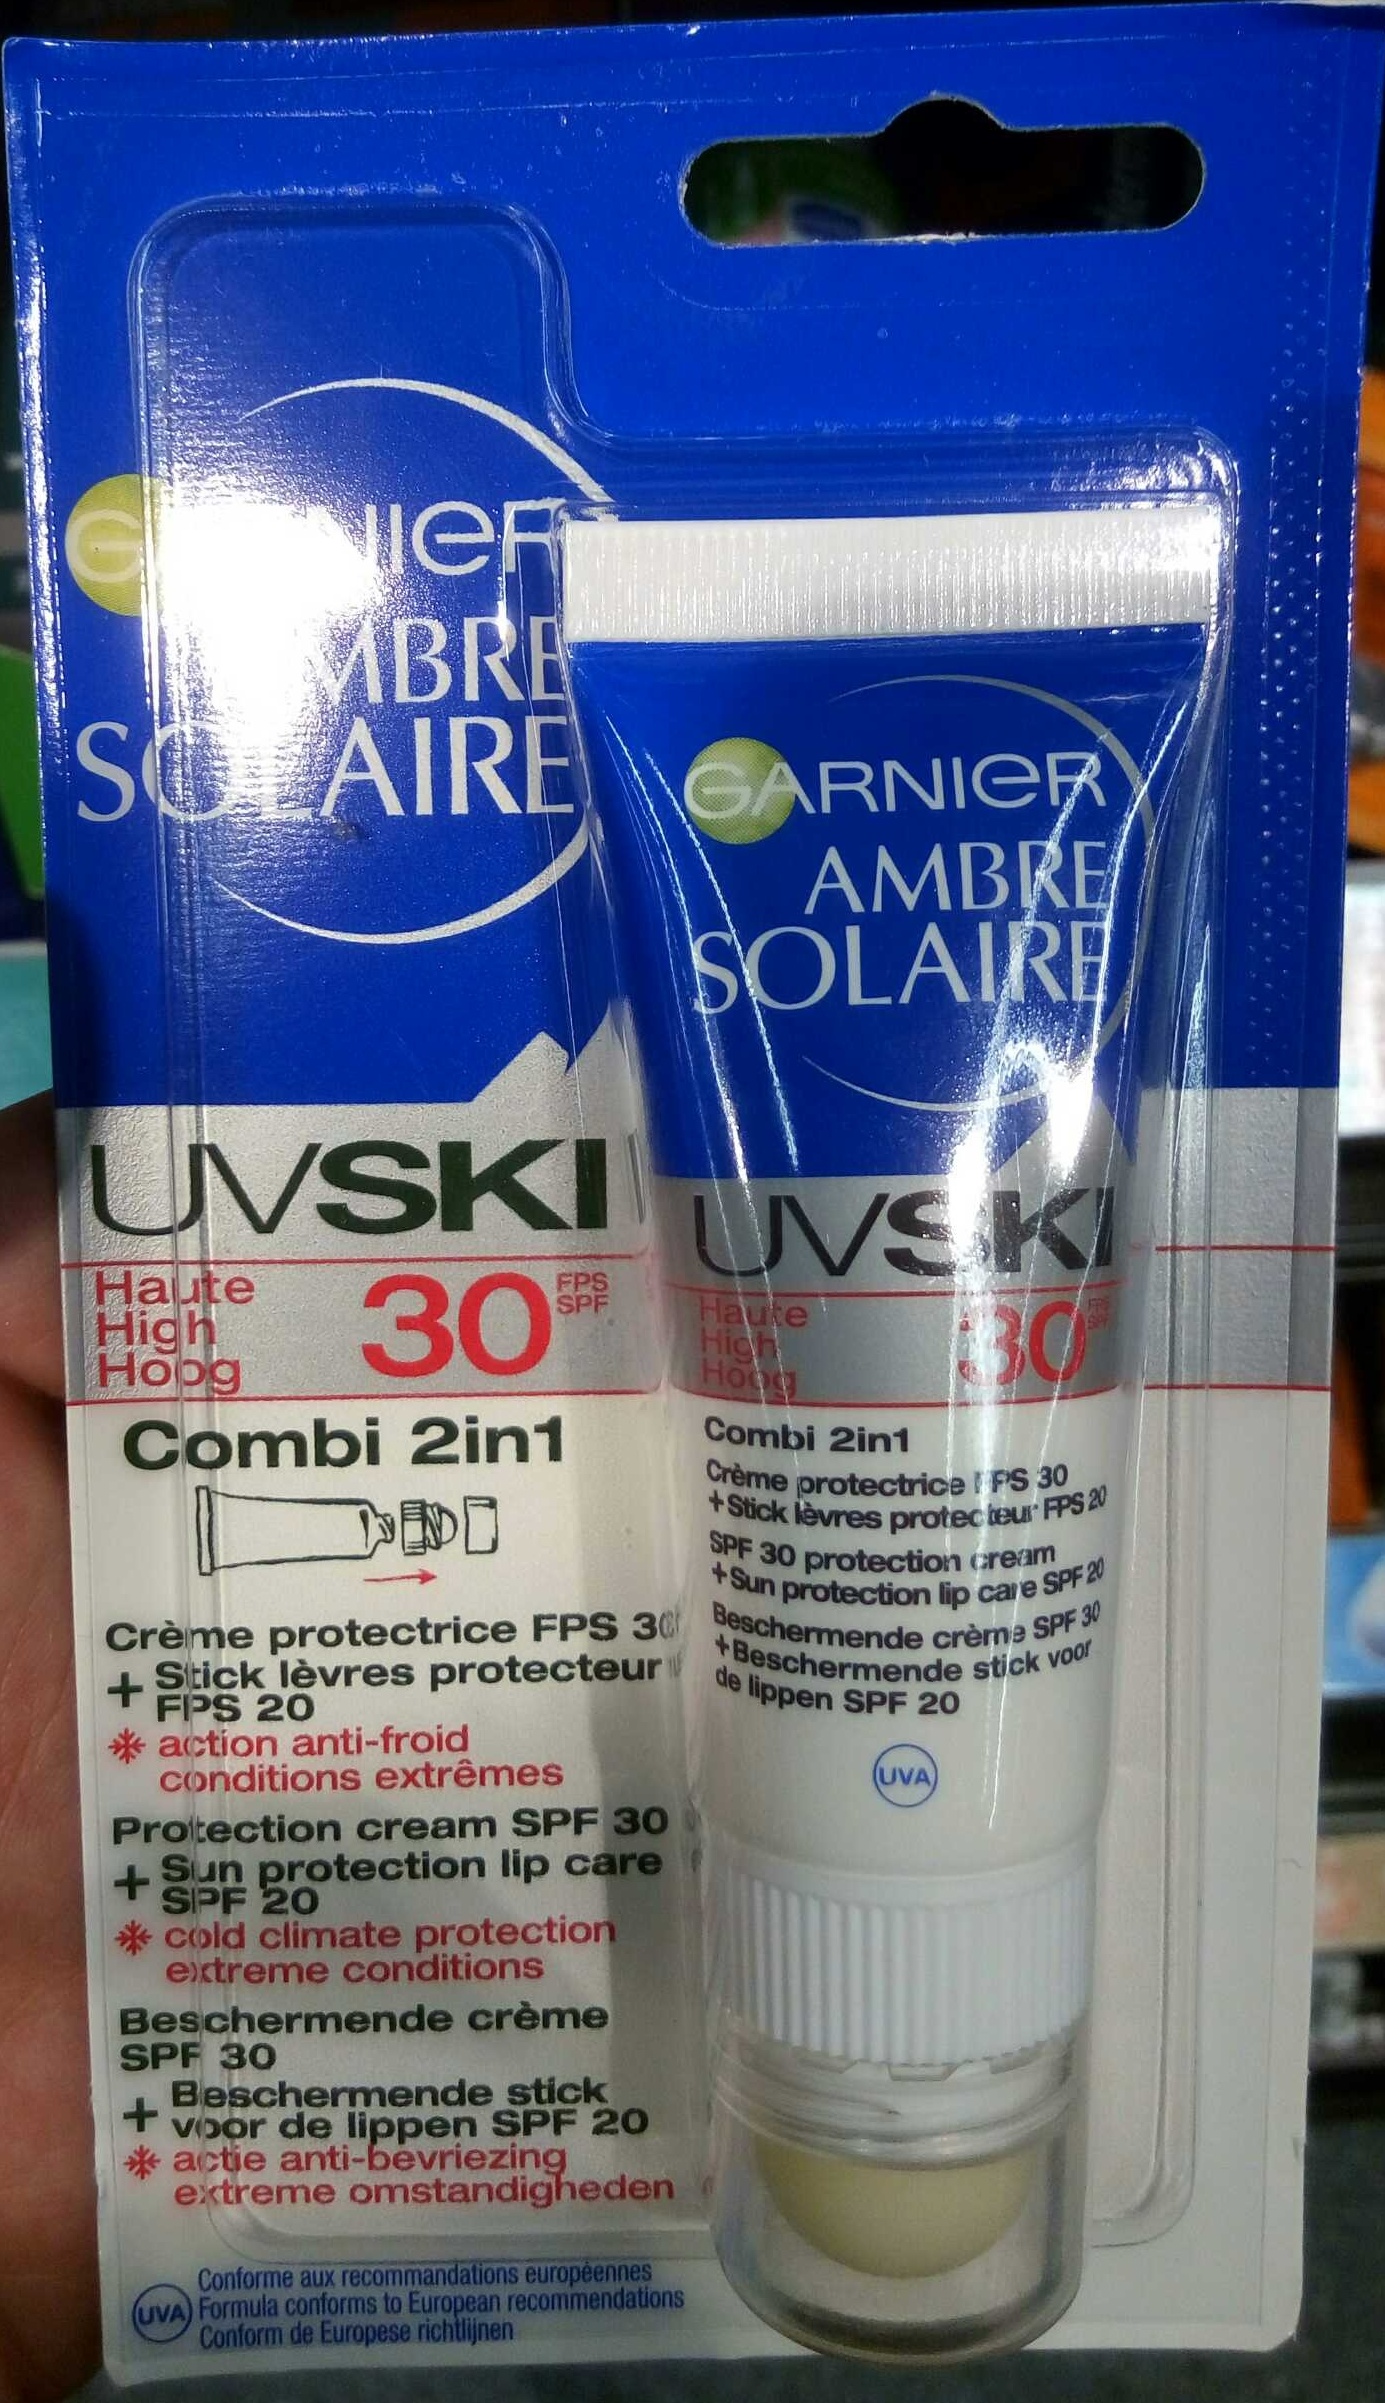 Ambre Solaire UV Ski 30 Combi 2in1 Crème protectrice + Stick lèvres protecteur - Produkt - fr